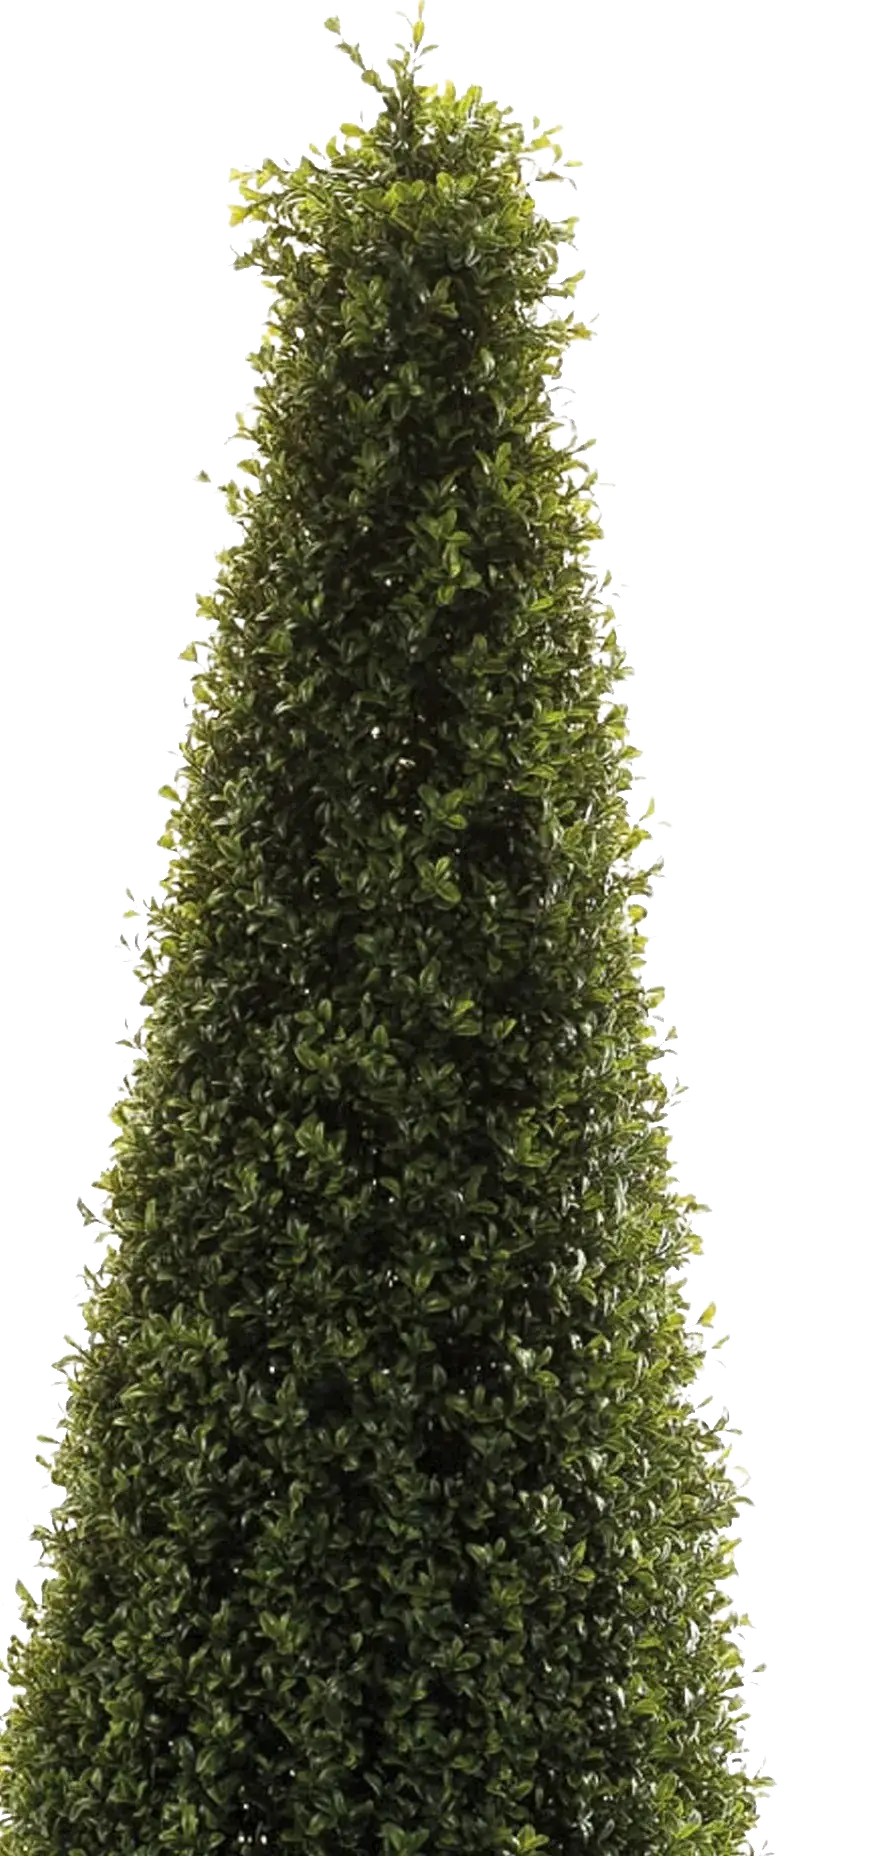 Künstliche Buchsbaumpyramide - Lucy | 135 cm auf transparentem Hintergrund, als Ausschnitt fotografiert, damit die Details der Kunstpflanze bzw. des Kunstbaums noch deutlicher zu erkennen sind.